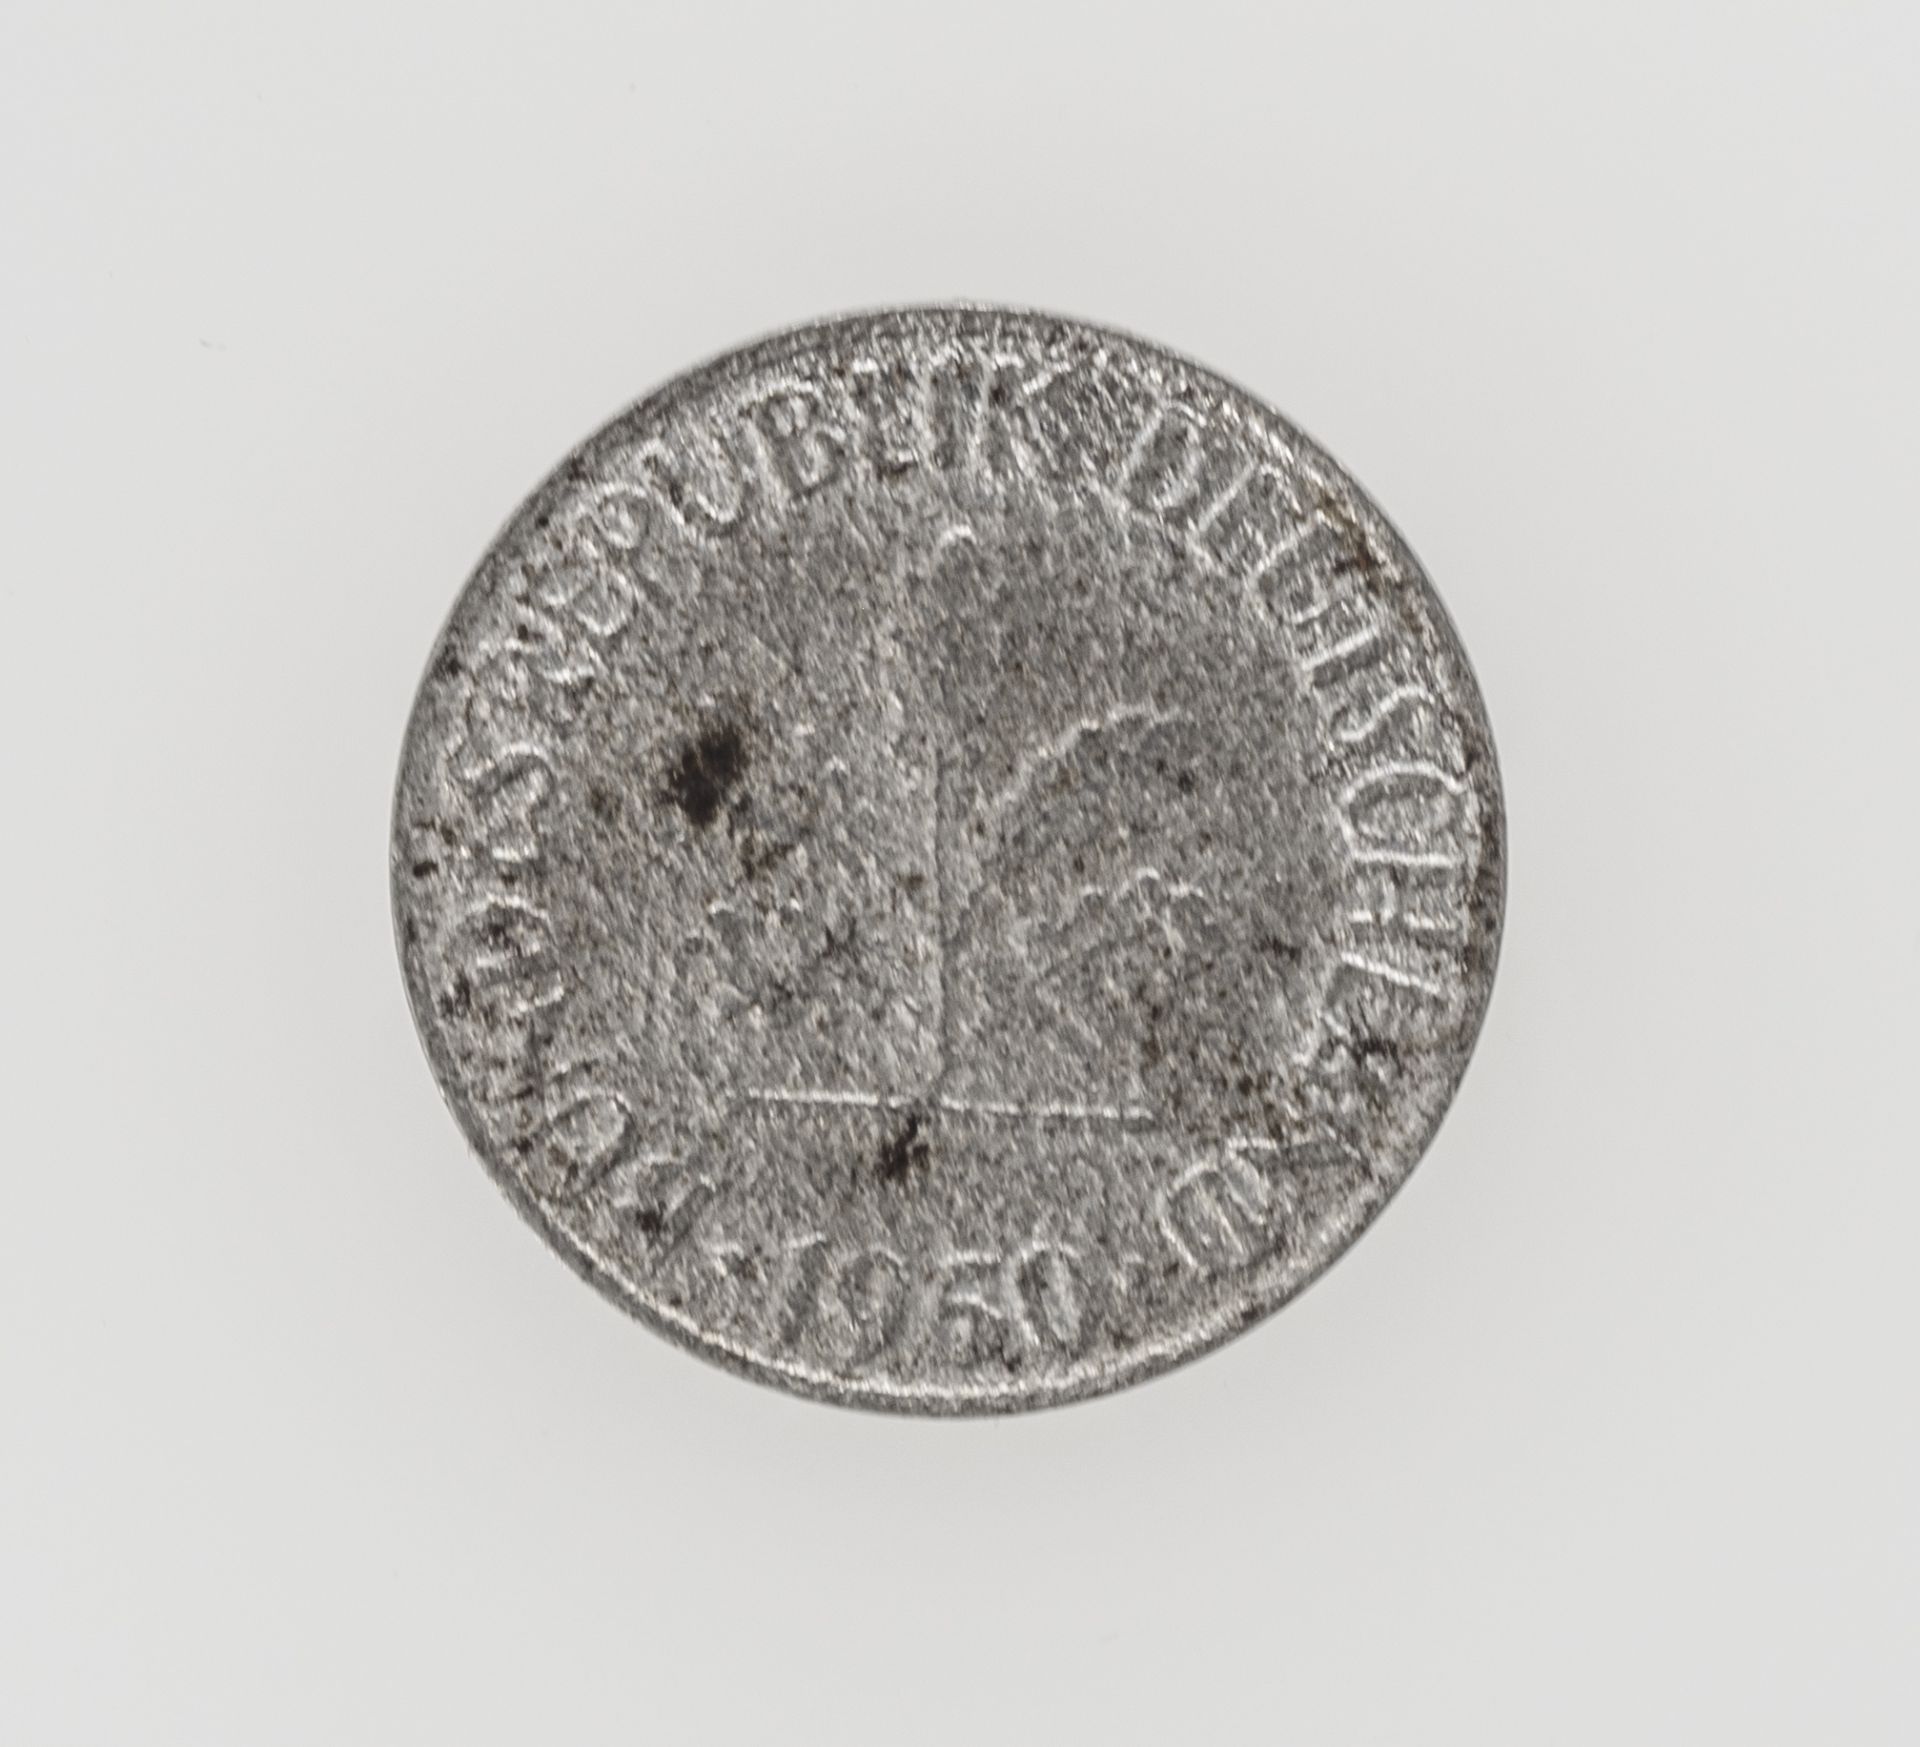 BRD 1950 D, 1 Pfennig - Münze, Fehlprägung: fehlende Plattierung. - Image 2 of 2